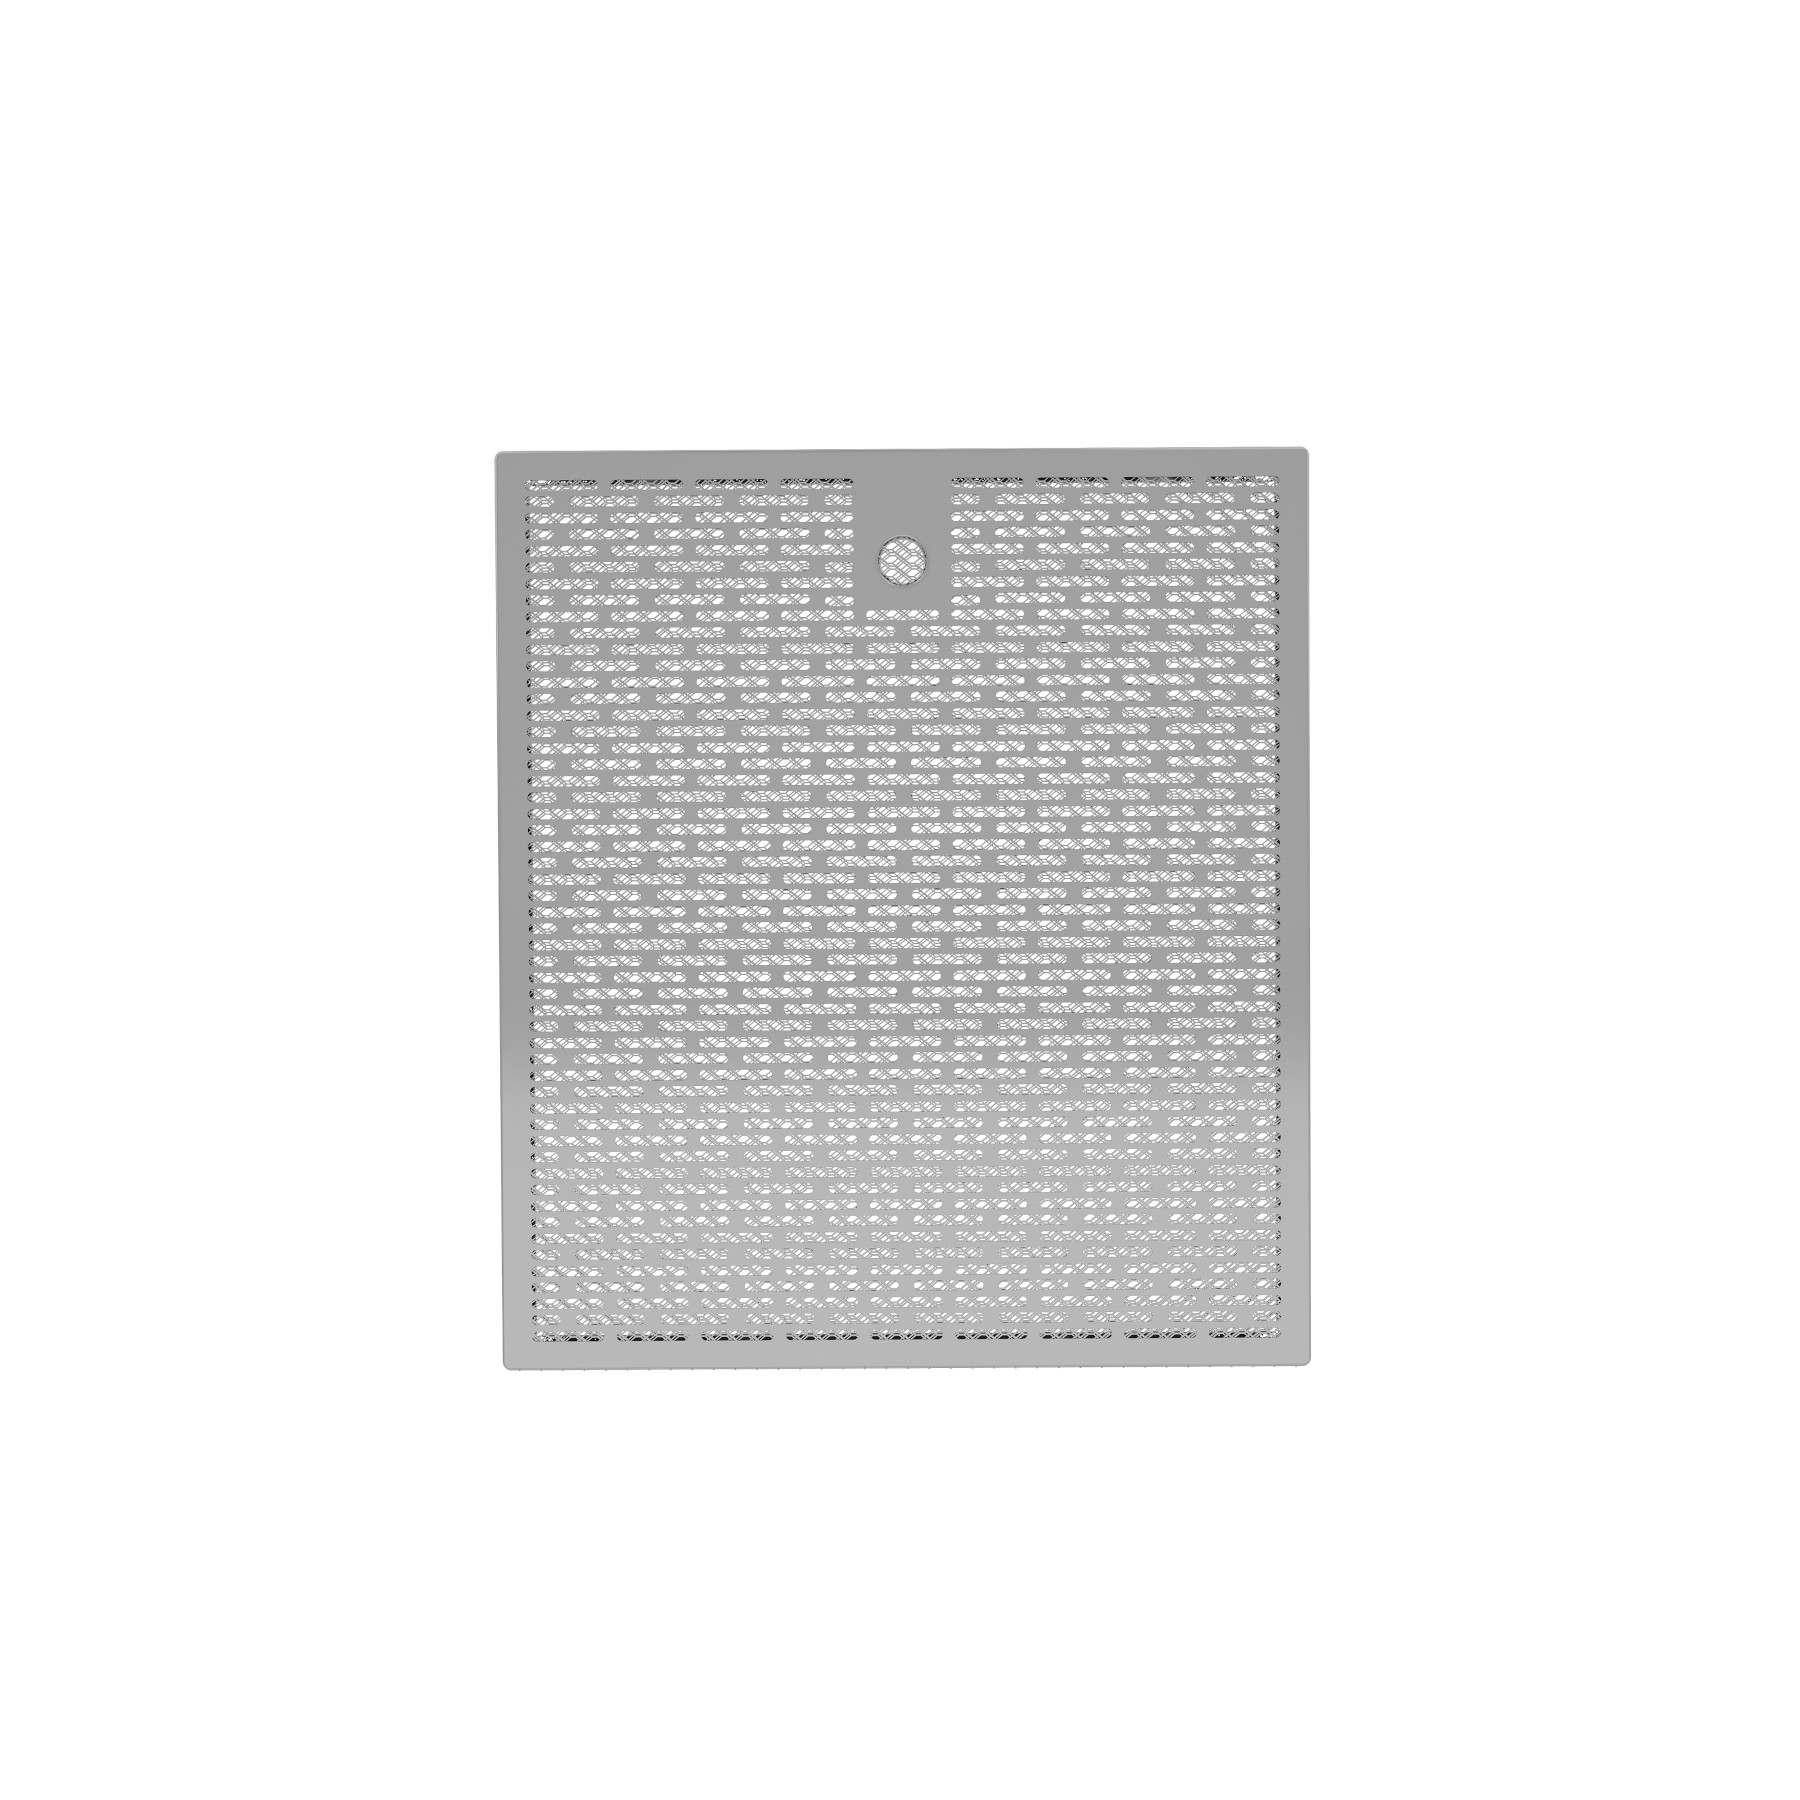 类型D3铝制微网状油脂滤清器15.725“ x 16.875” x 0.375“